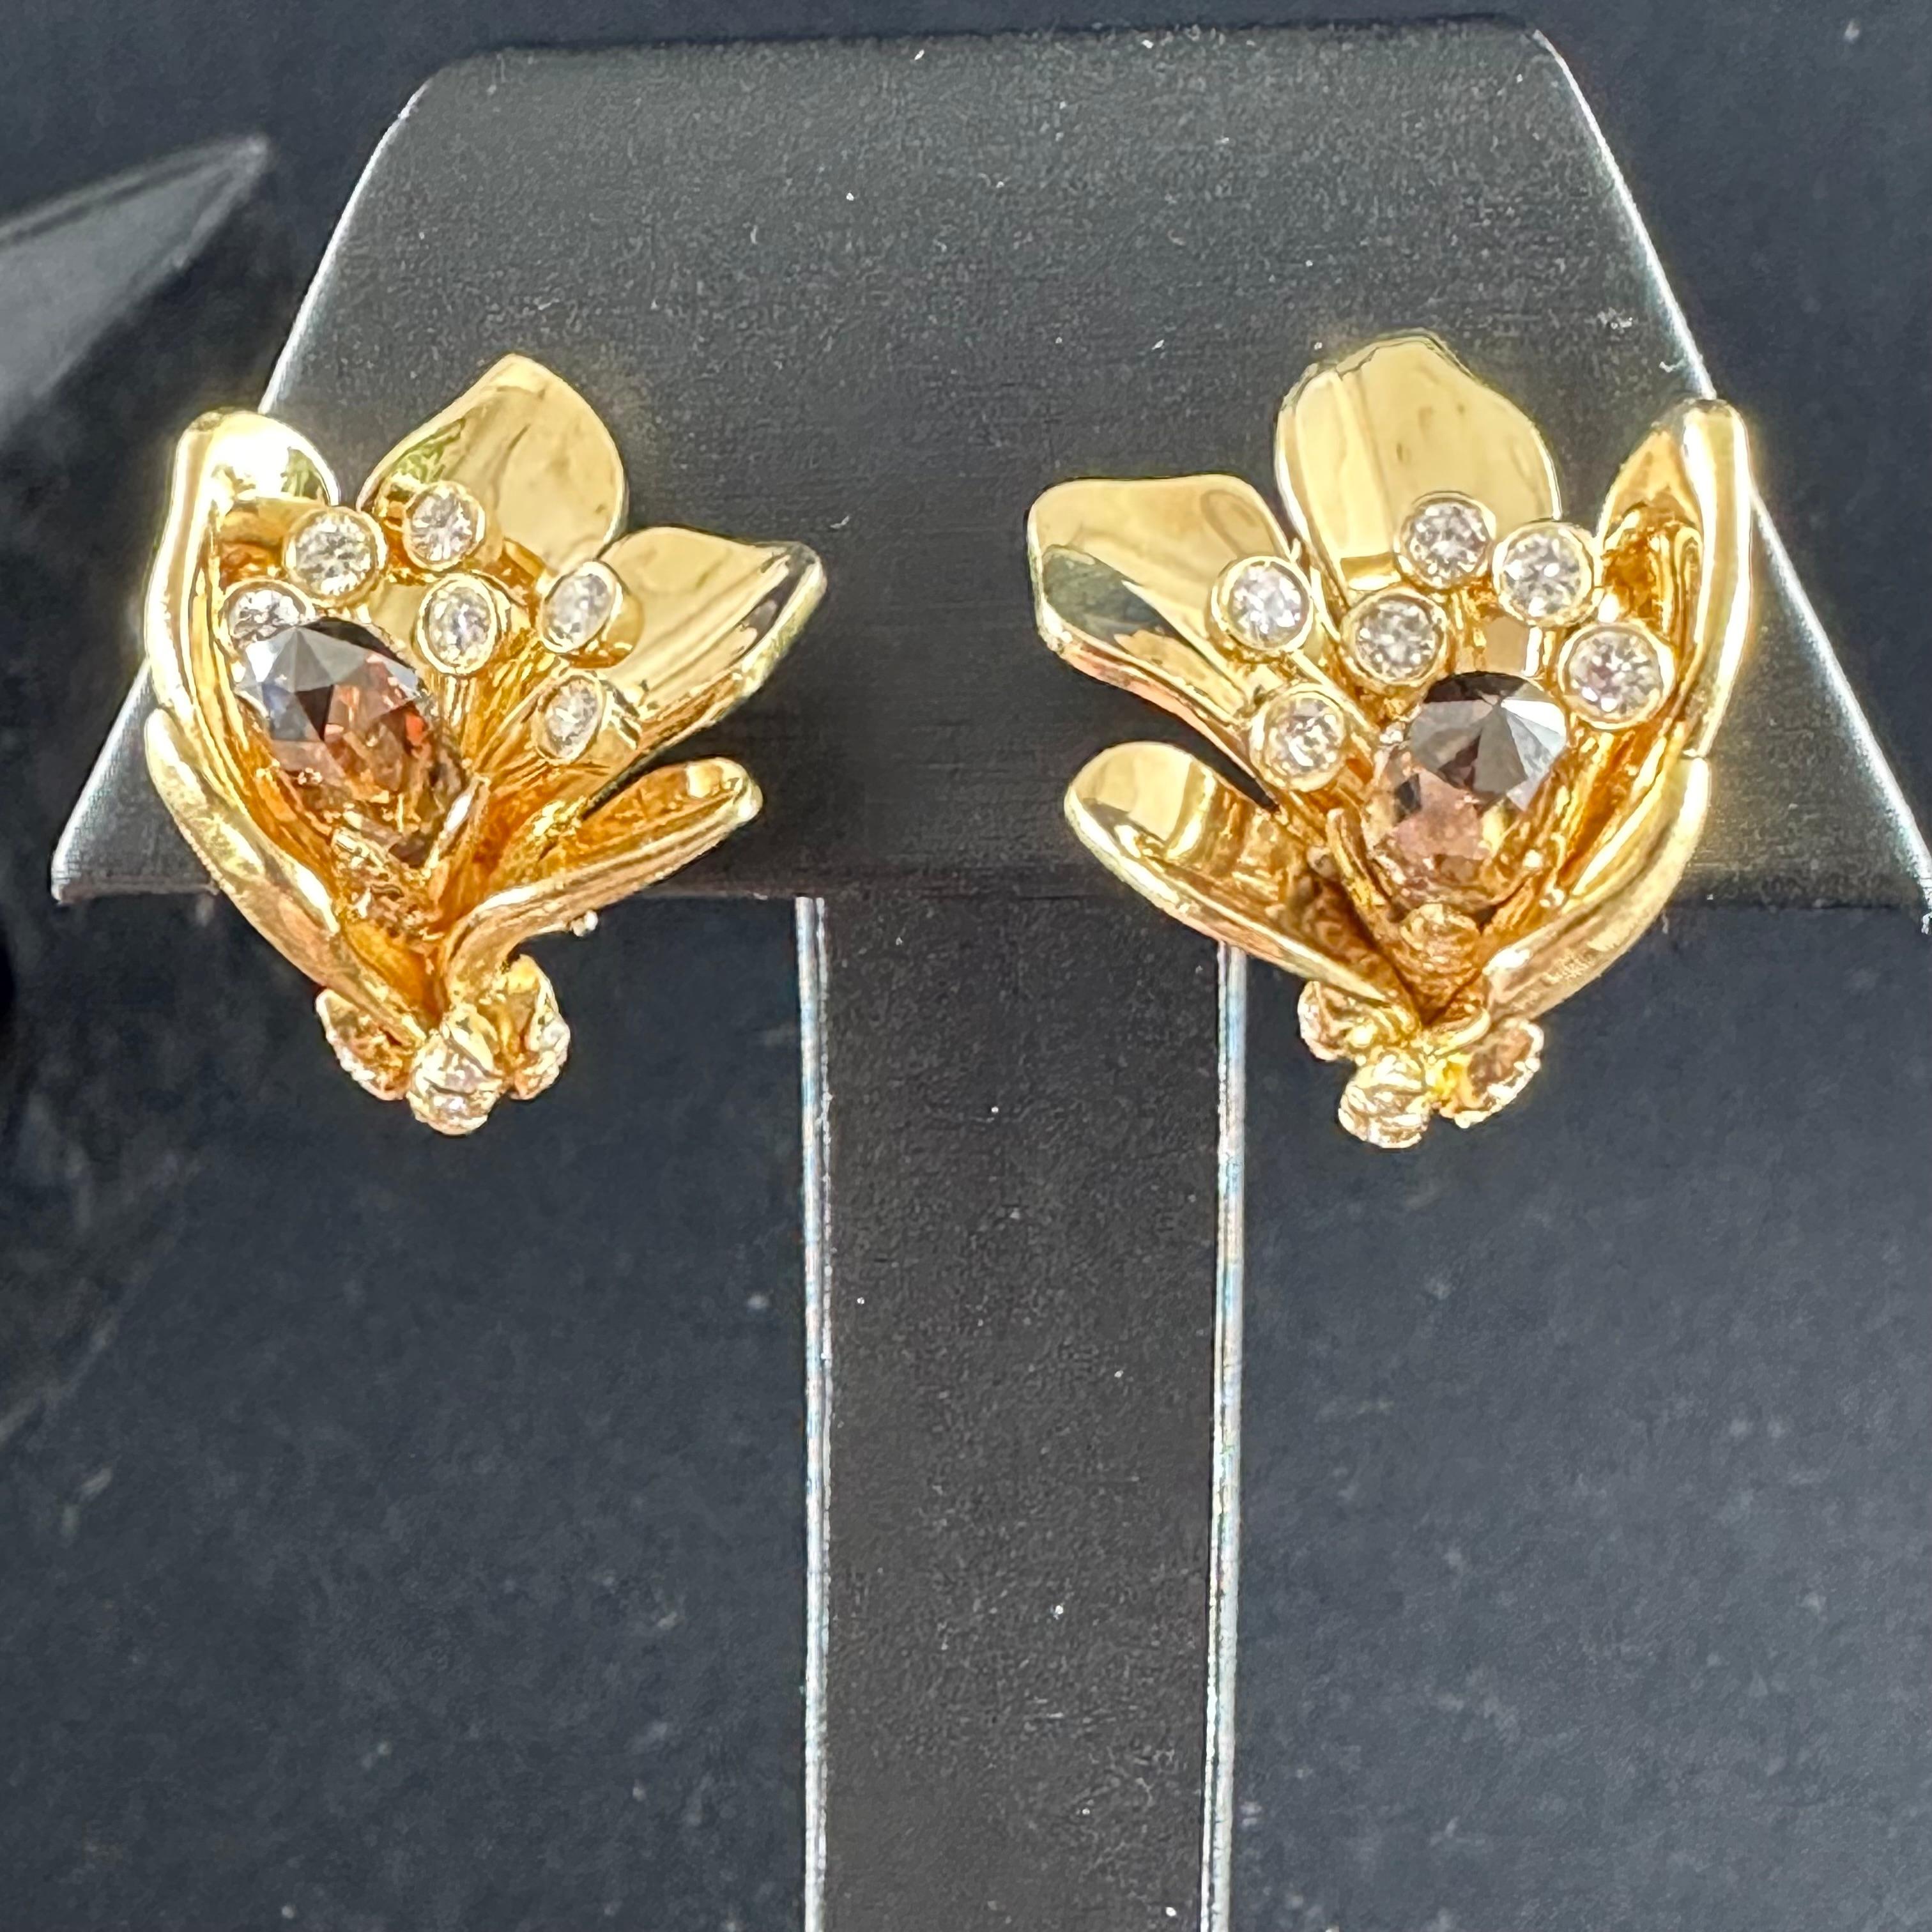 Briolette Cut Julius Cohen Briolette Diamond 18k Yellow Gold Earrings For Sale